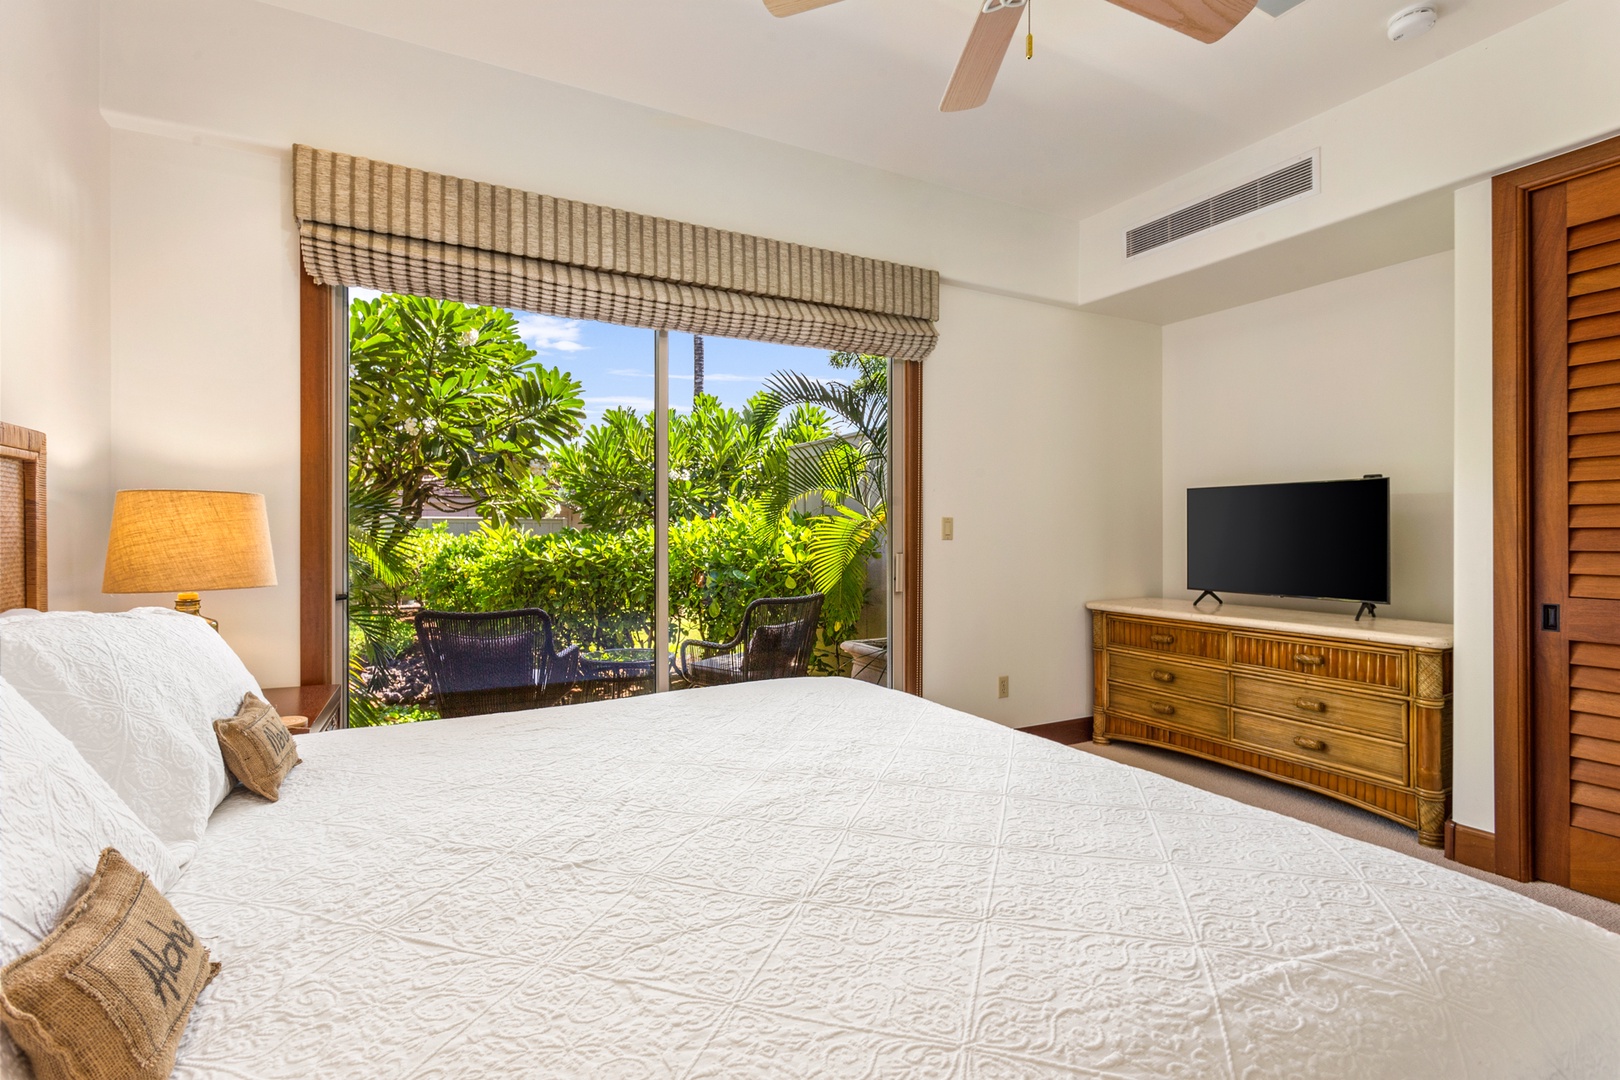 Kailua Kona Vacation Rentals, 3BD Ka'Ulu Villa (129D) at Four Seasons Resort at Hualalai - Alternate view of second bedroom showcasing private patio and flatscreen television.